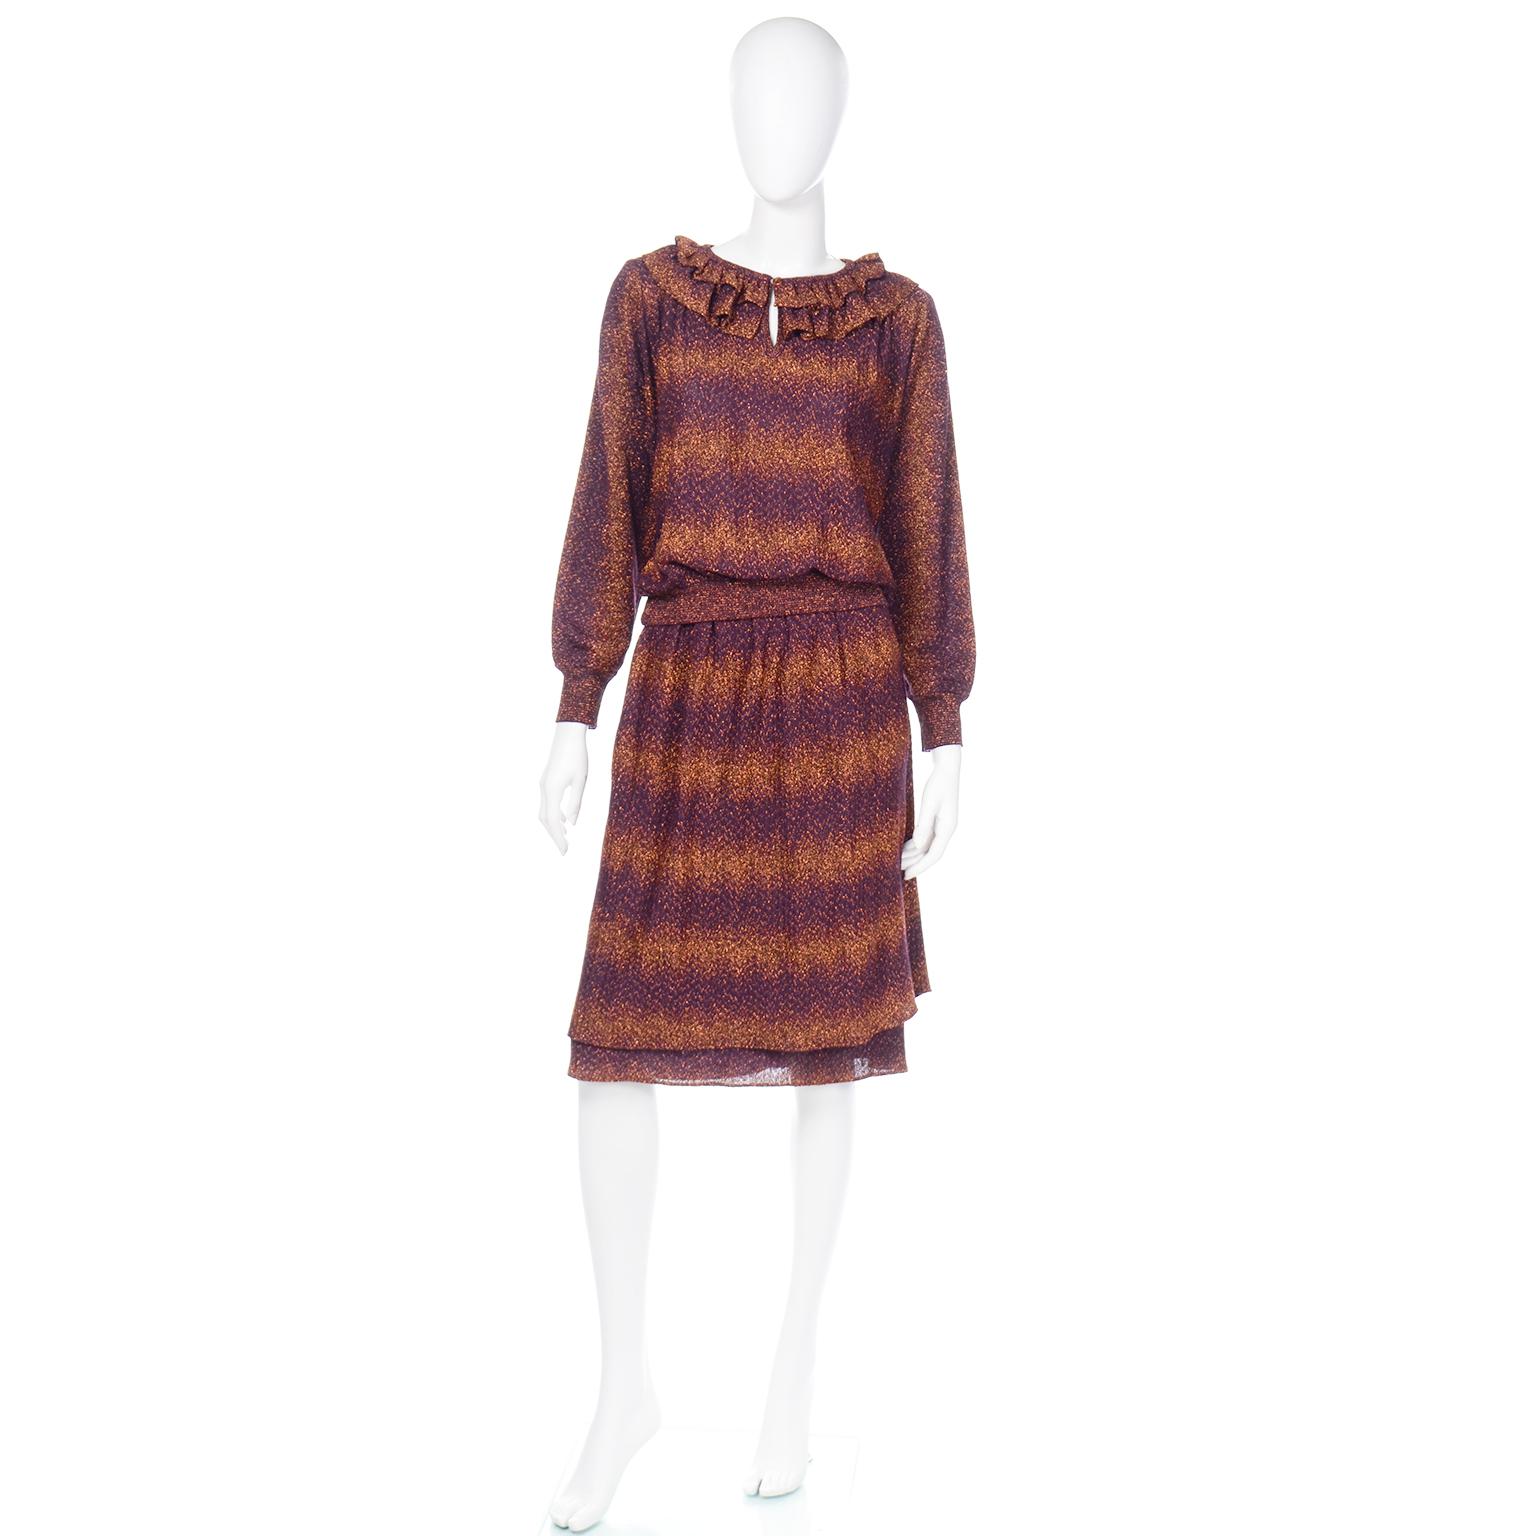 Dies ist eine wunderbare Vintage 1970's Missoni für Saks Fifth Avenue lila stricken mit metallischen Bronze Lurex Details. Wir lieben dieses Outfit, weil man jedes der Teile einzeln oder zusammen als 2-teiliges Kleid tragen kann.  Das Oberteil